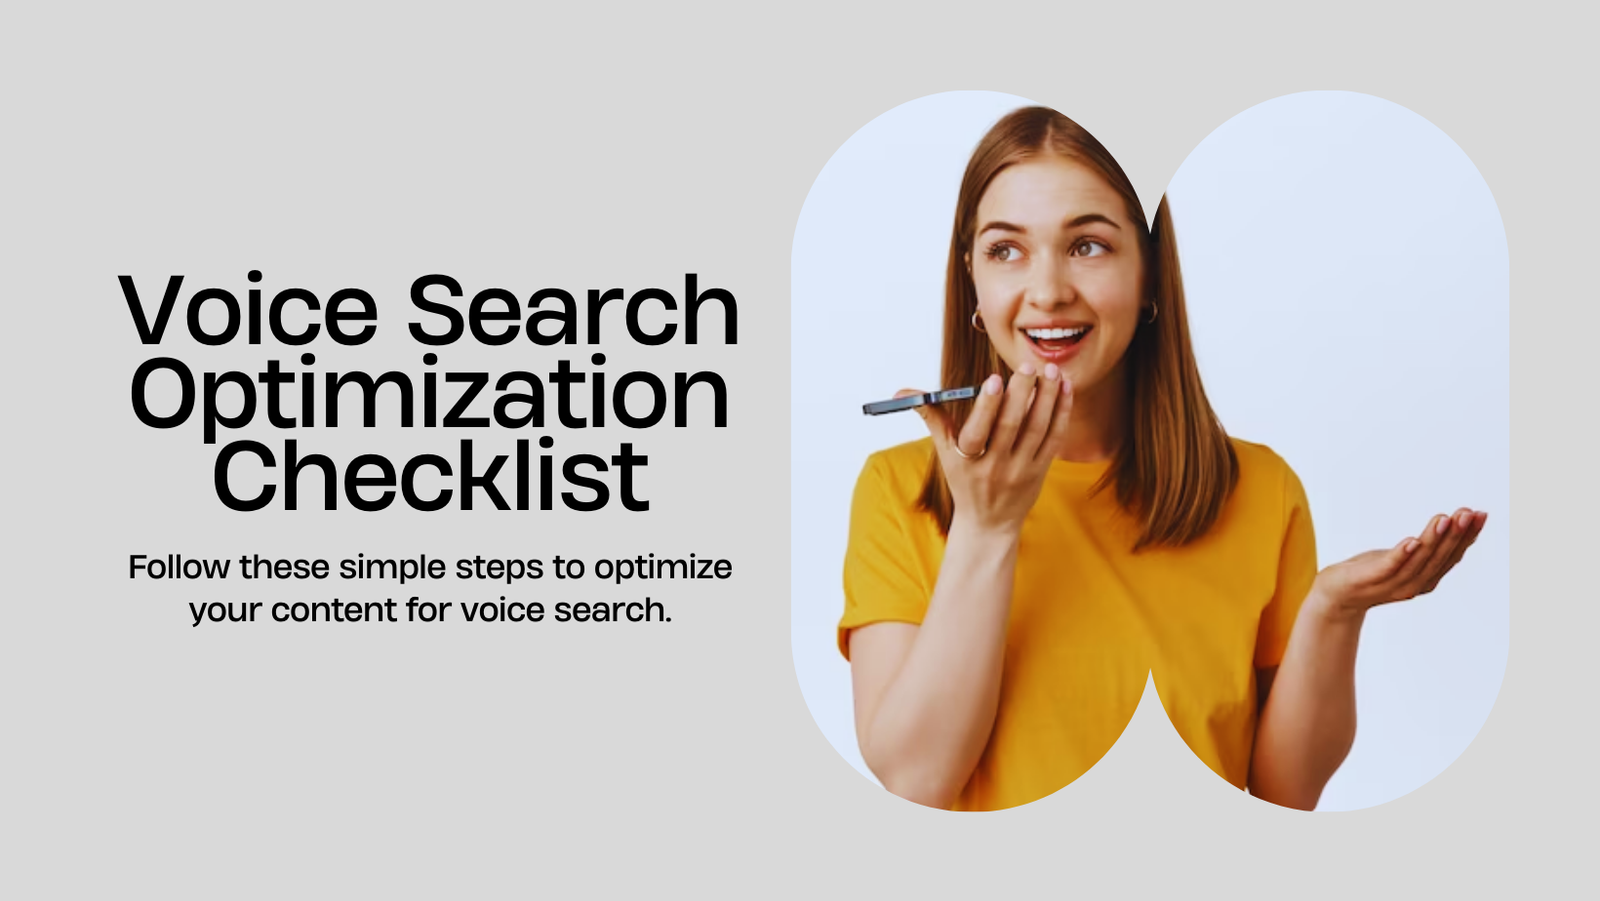 Voice Search Optimization Checklist